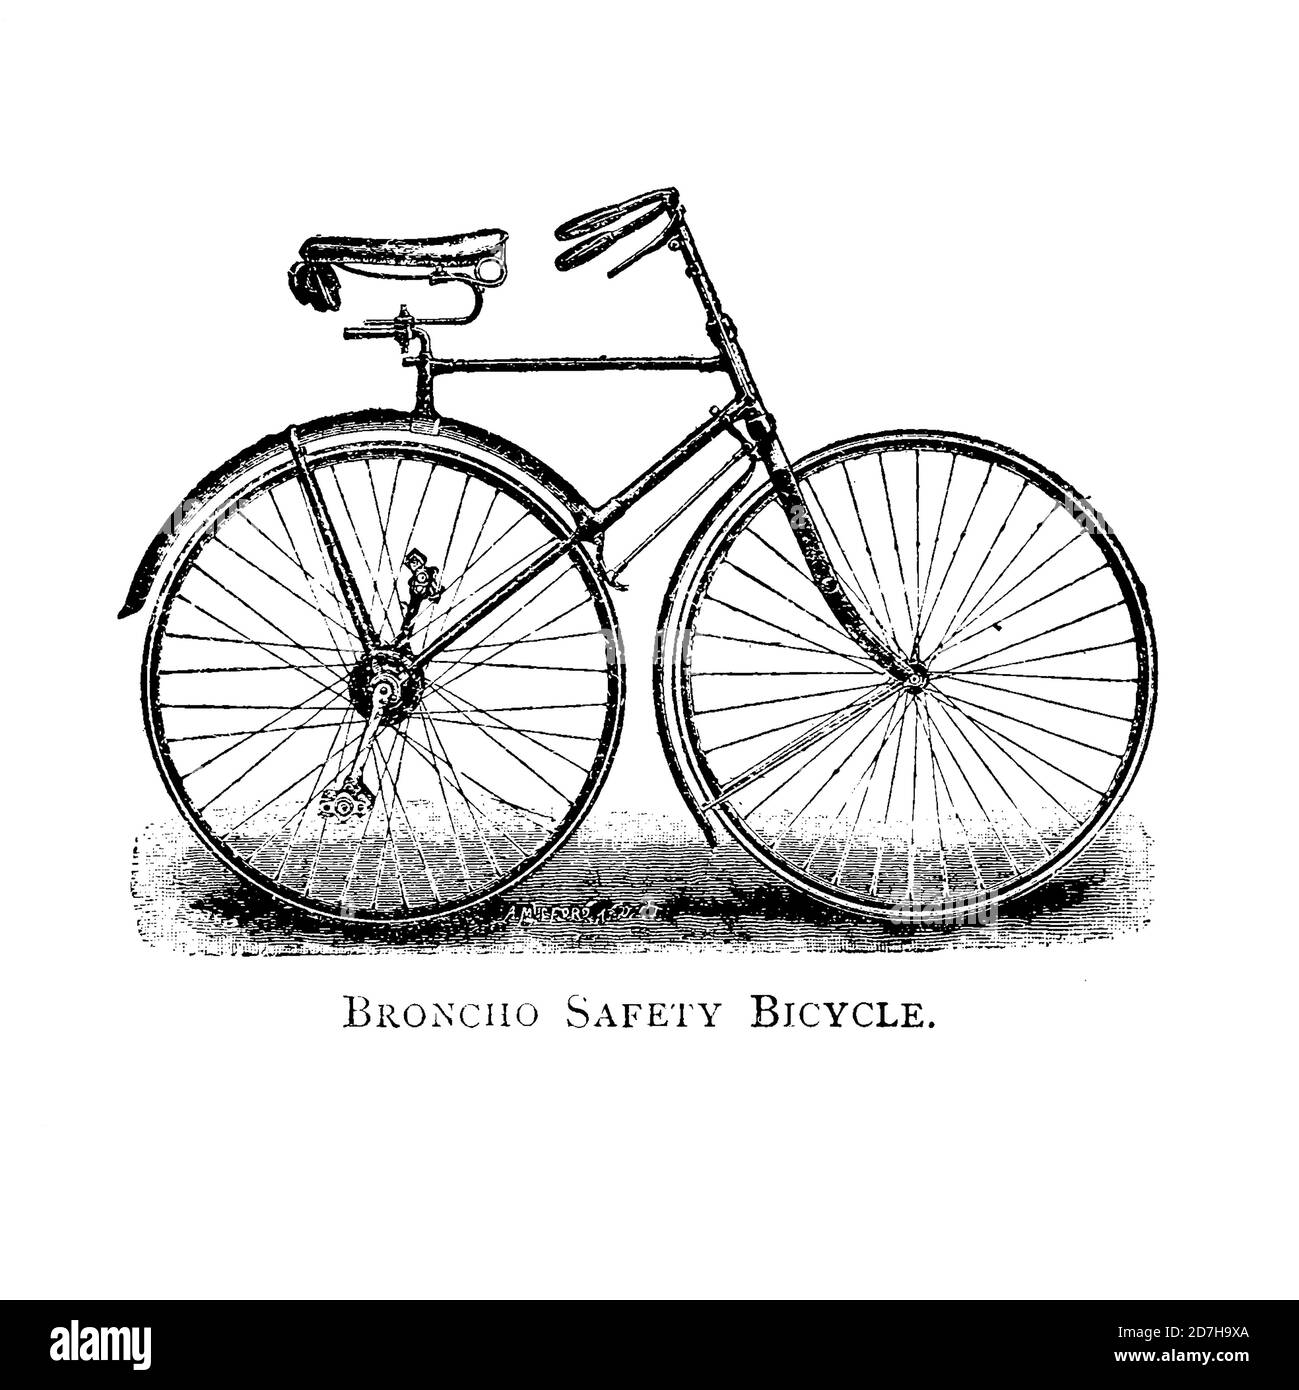 Vélo de sécurité broncho de Wheeling, un manuel indispensable pour les cyclistes, avec plus de deux cents illustrations de porter, Luther Henry. Banque D'Images